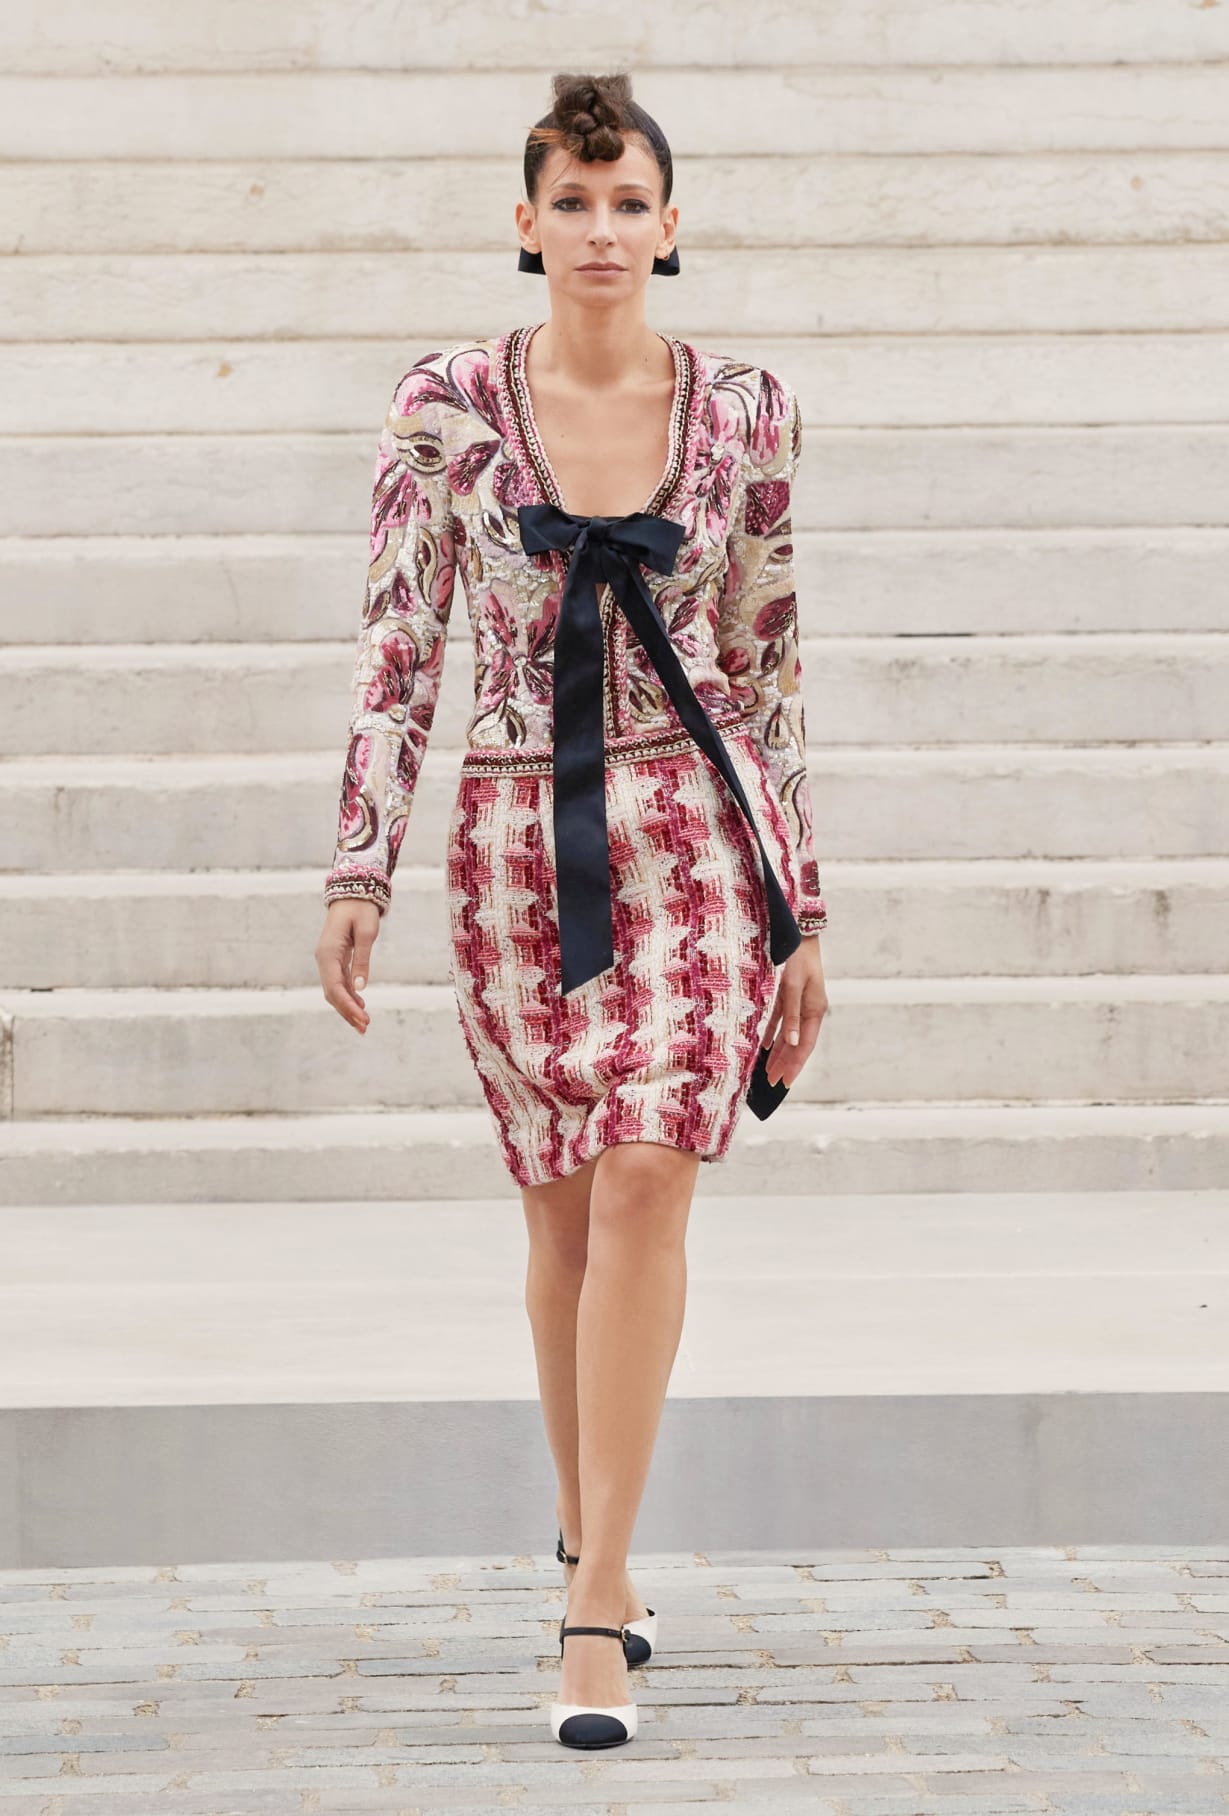 Chanel Haute Couture 2021: Sự tối giản của sàn diễn để tôn vinh trang phục  - Ảnh 6